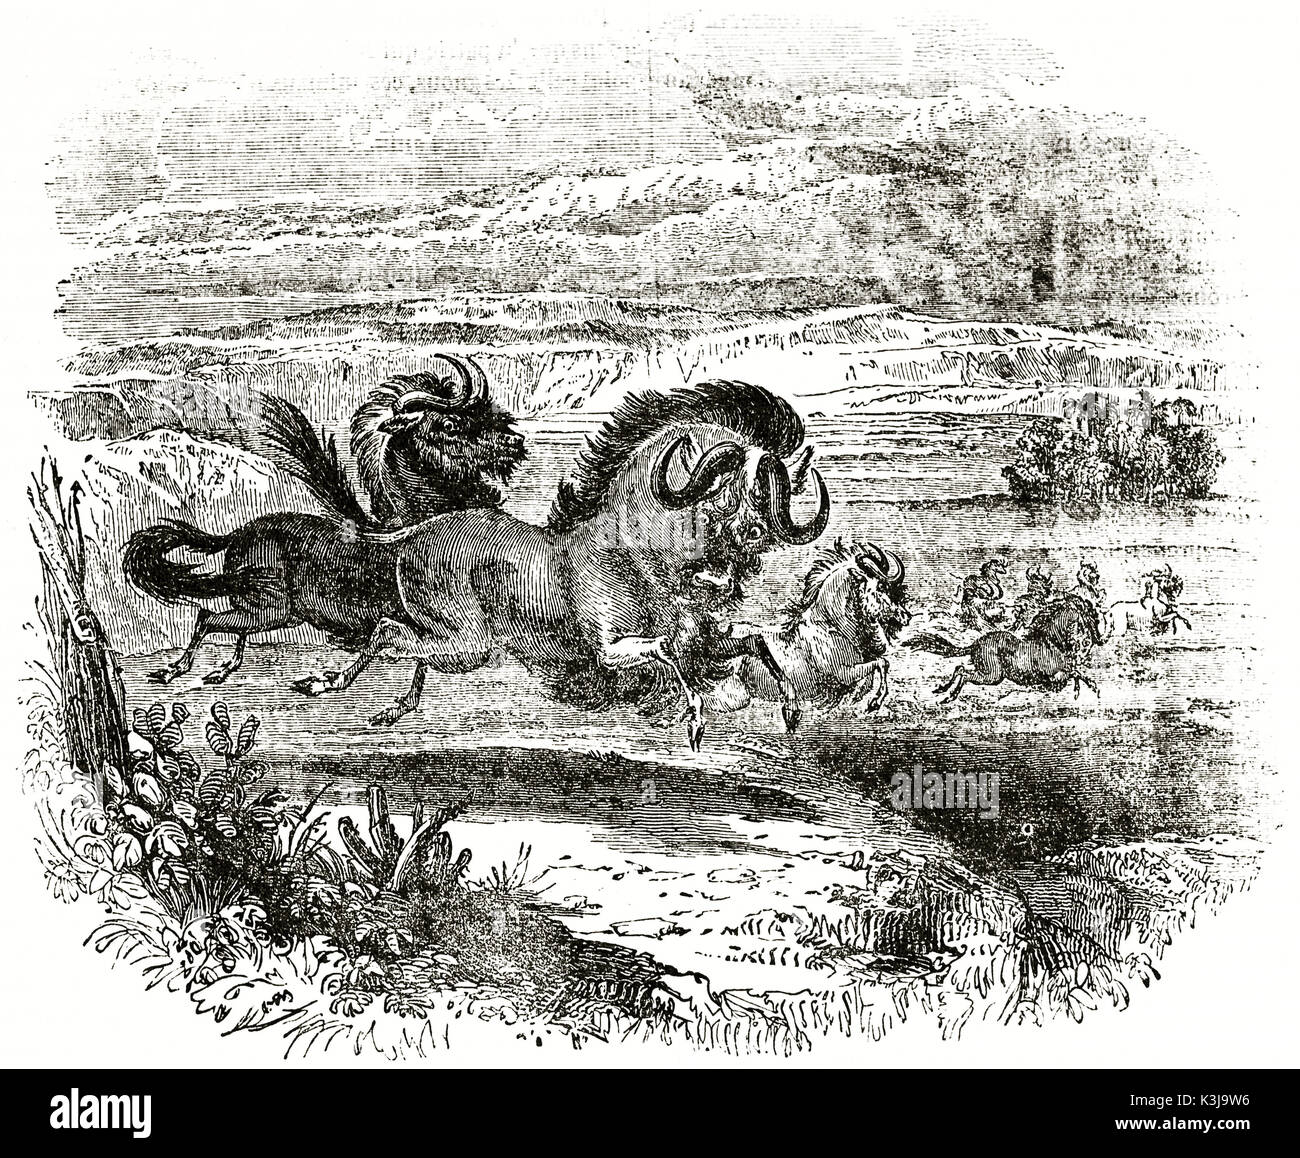 Vecchia illustrazione di wildebeests (connochaetes gnou) nel Capo di Buona Speranza pianure. da autore non identificato, pubblicato il magasin pittoresco, Parigi, 1838 Foto Stock